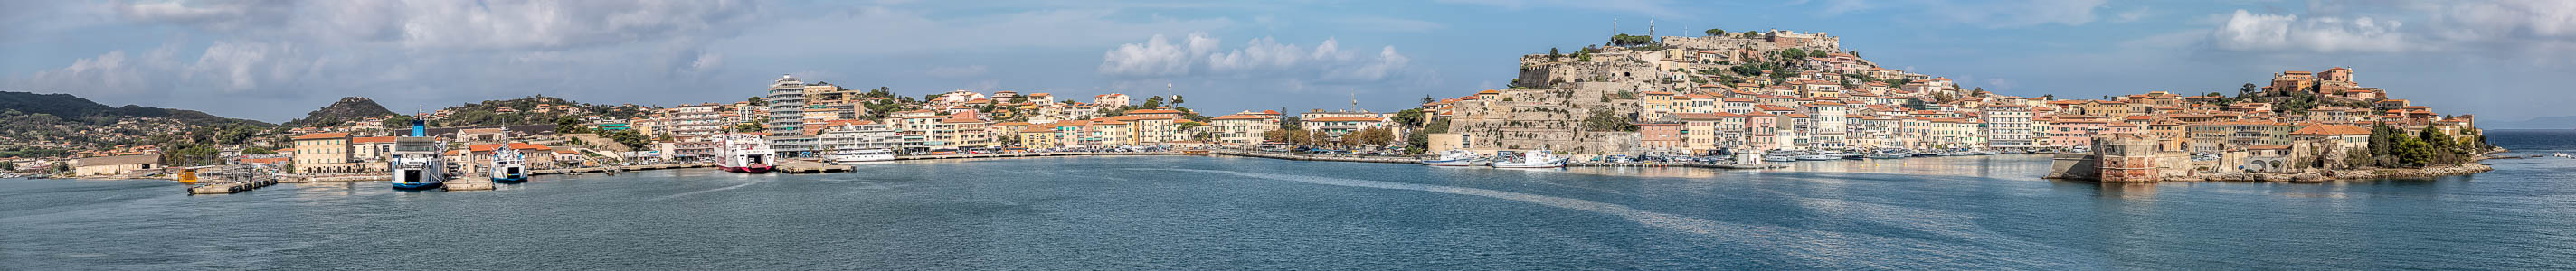 Tyrrhenisches Meer, Porto di Portoferraio, Fortezze Medicee, Darsena medicea, Centro storico mit dem Forte Stella, Torre della Linguella (Torre del Martello)